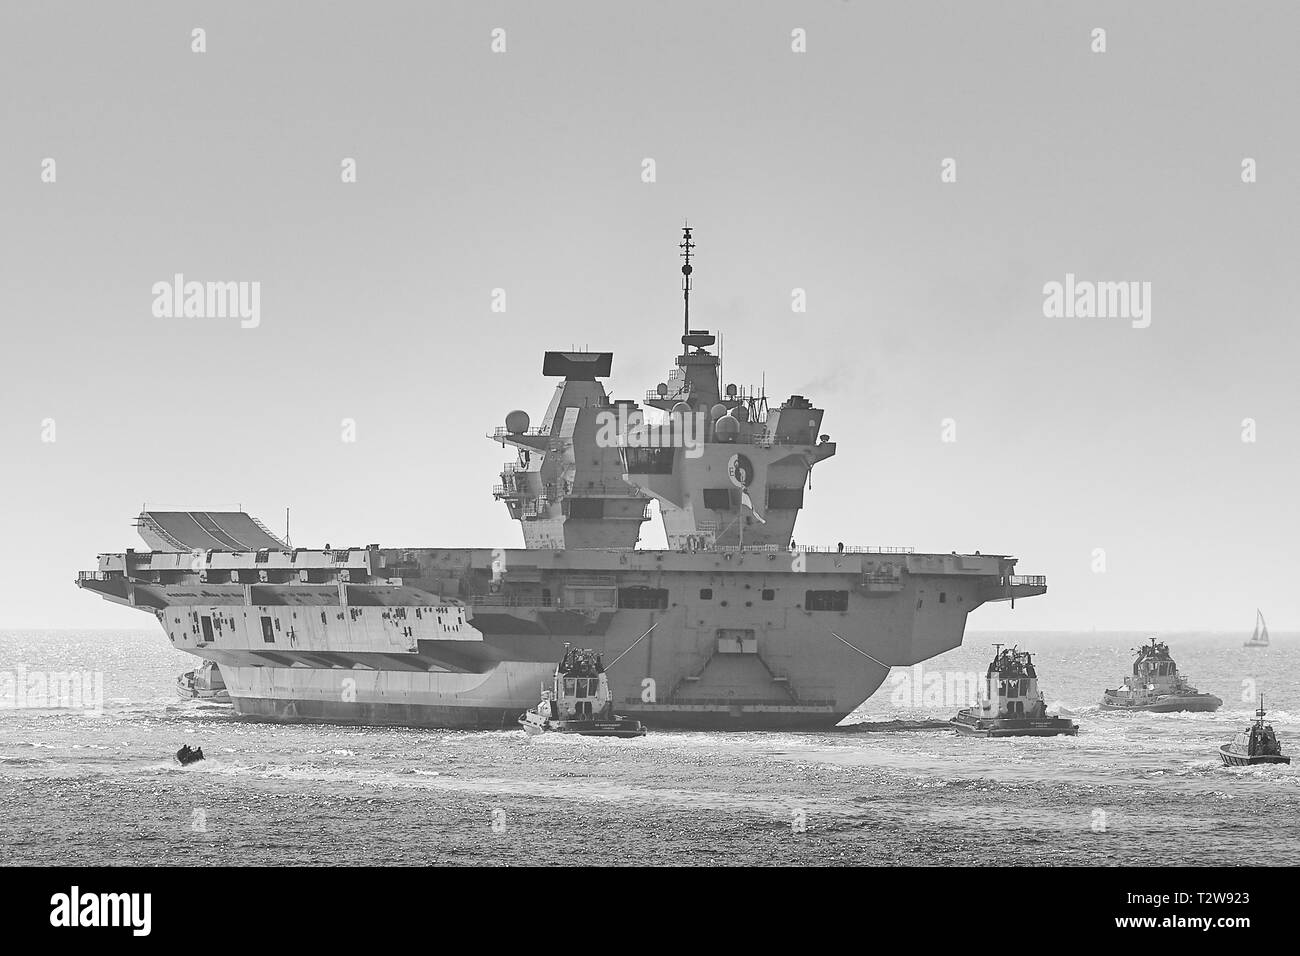 Porte-avions de la Royal Navy, le HMS QUEEN ELIZABETH, étant assisté par 3 remorqueurs à l'arrière comme elle quitte Portsmouth Pour Rosyth, en Écosse. 01 avril 2019. Banque D'Images